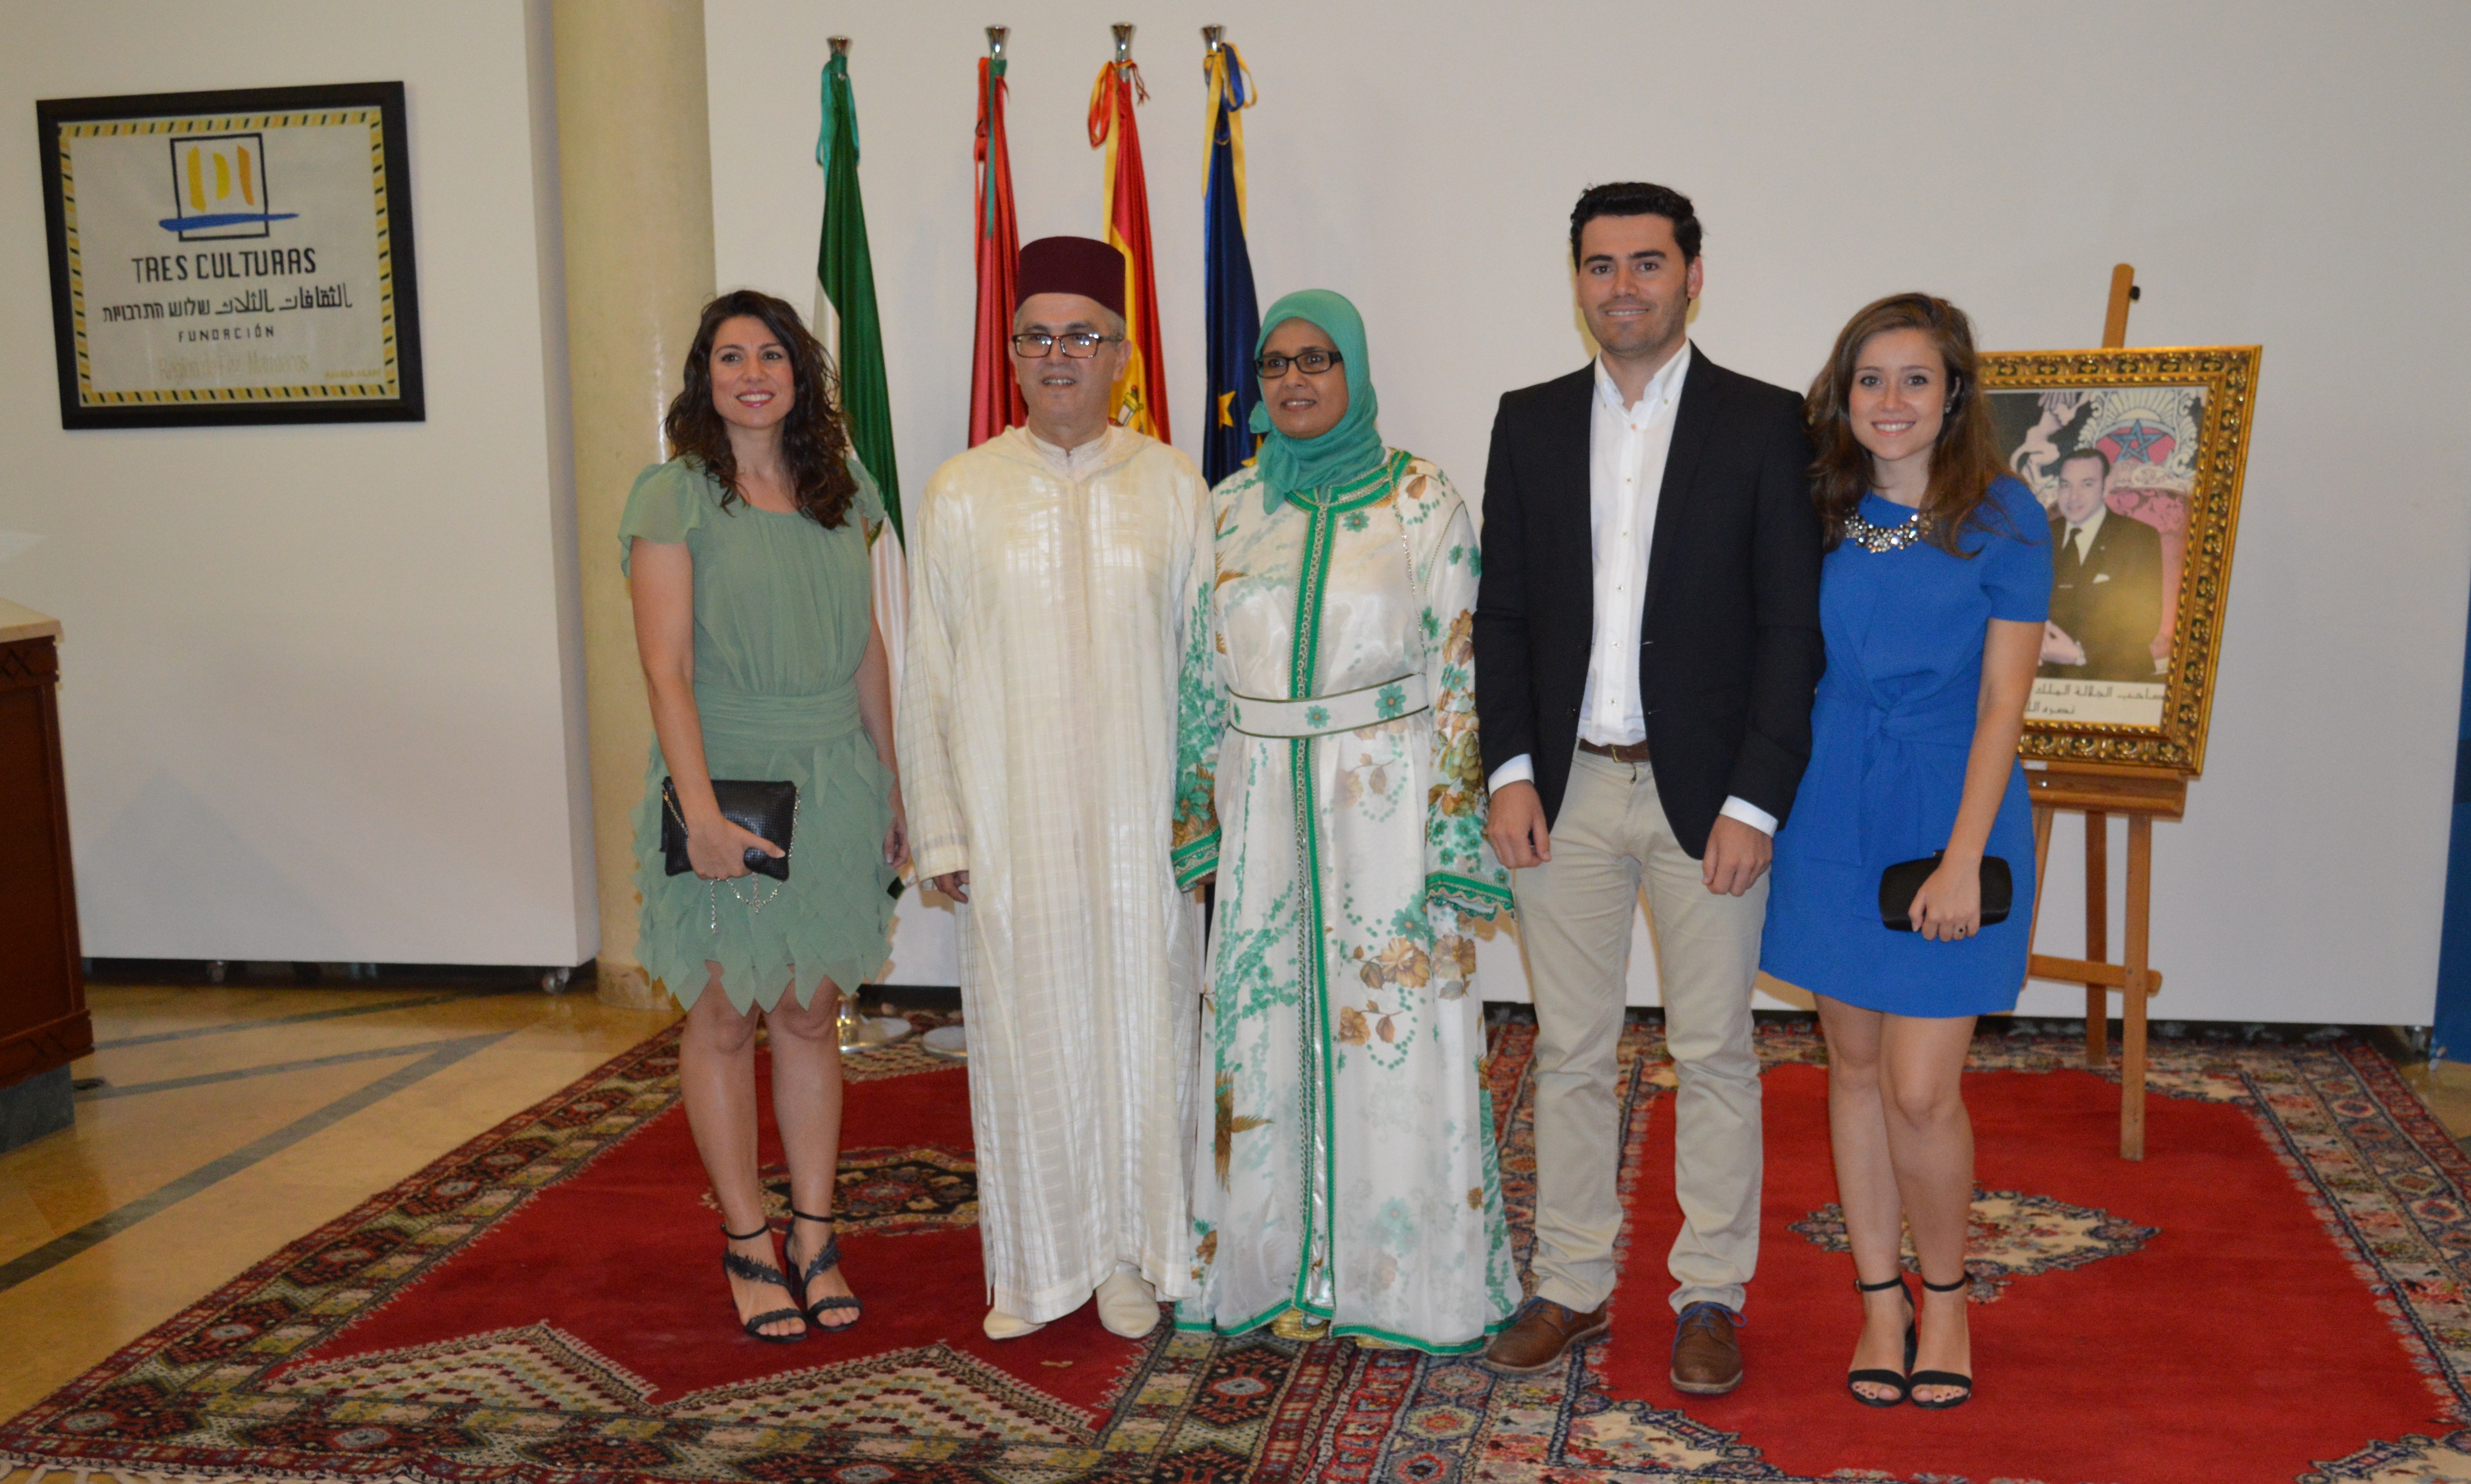 AgroMartín presente en la celebración del XVII Aniversario de la Ascensión al Trono del Rey Mohamed VI